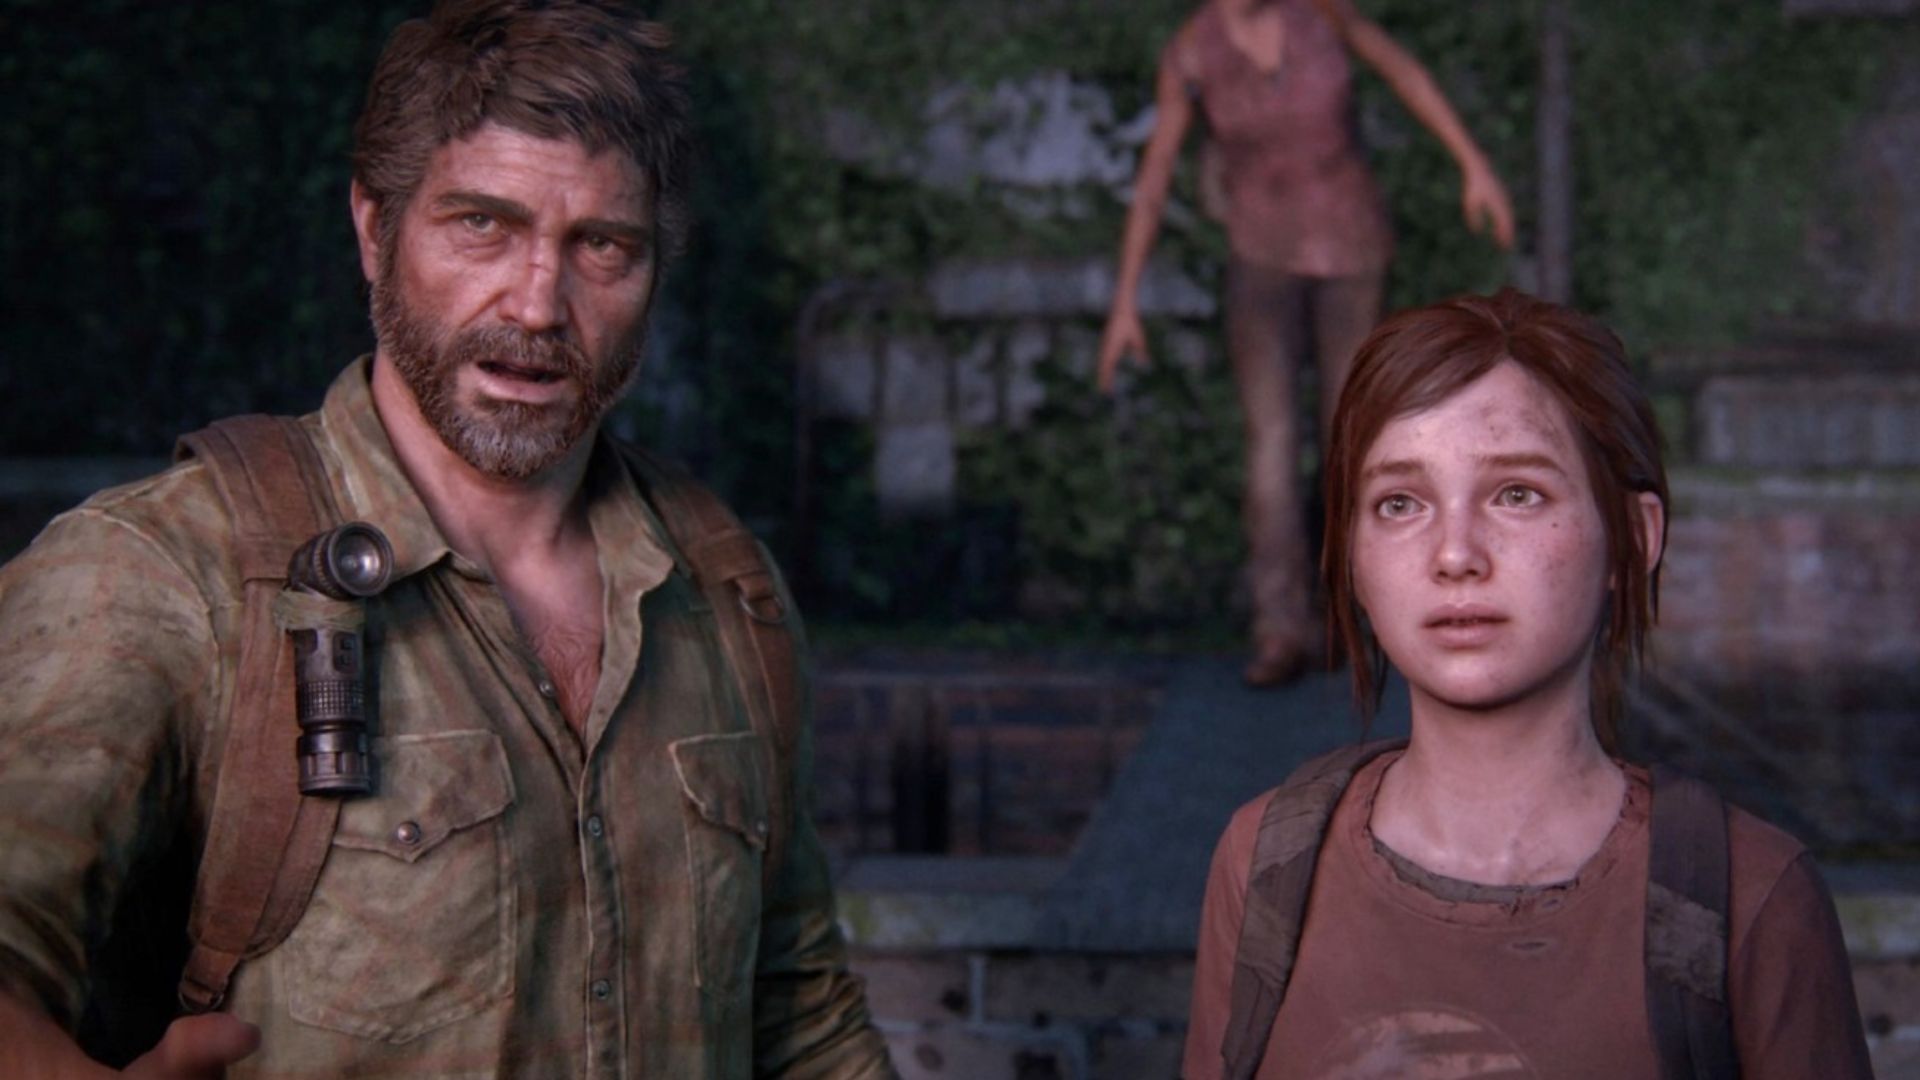 No universo de "The Last of Us", Ellie nunca poderia matar infectados jogando "The Last of Us" (Foto: Reprodução/Naughty Dog)